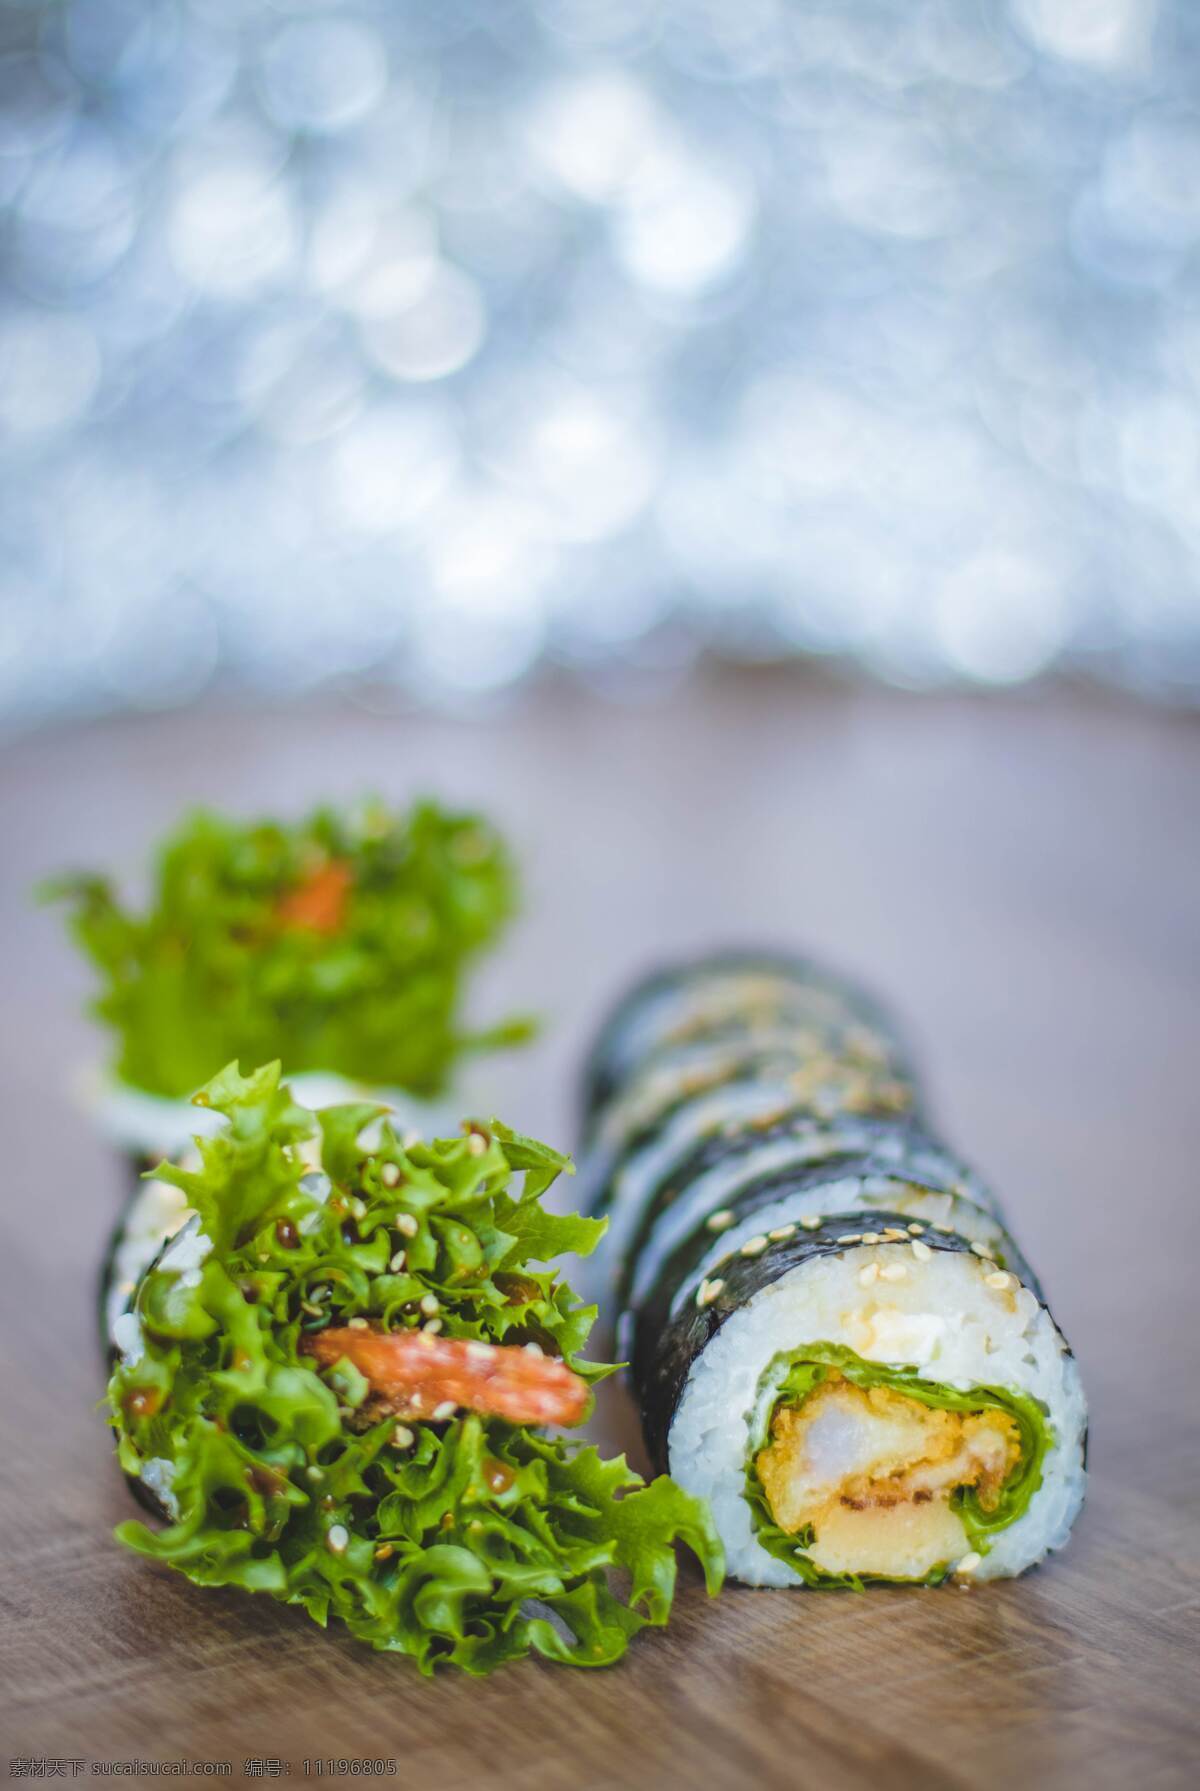 寿司图片 美食 寿司 菜 寿司卷 食品 餐饮美食 传统美食